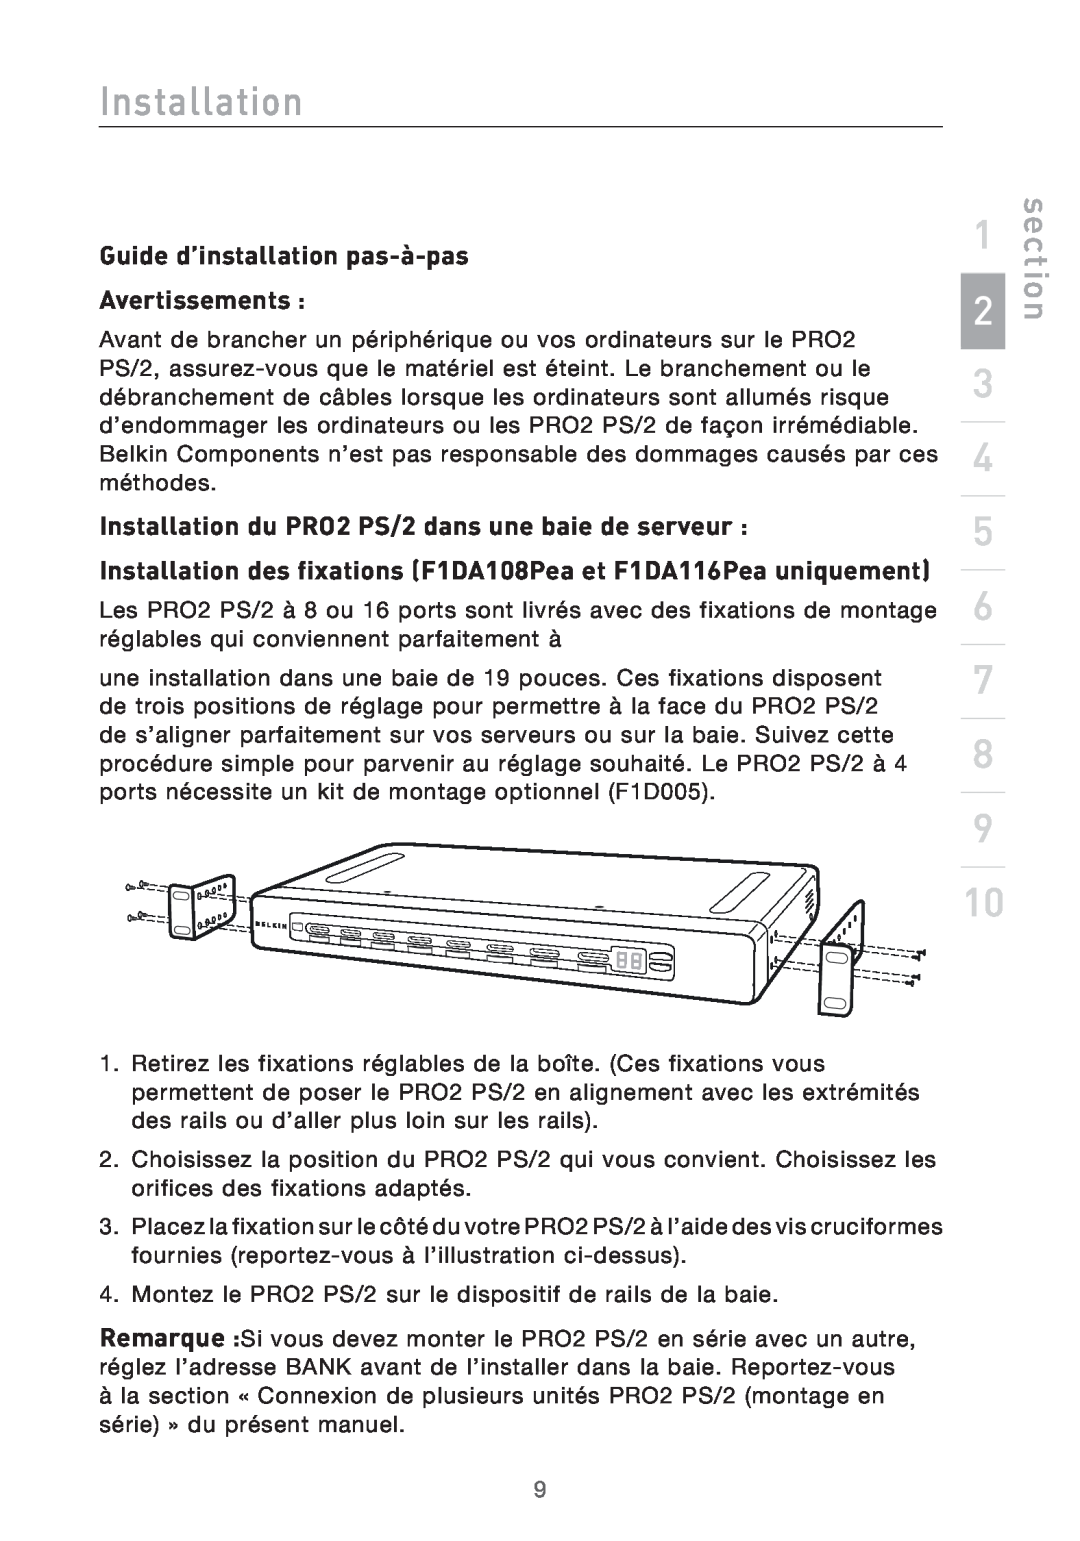 Belkin Guide d’installation pas-à-pas, Installation du PRO2 PS/2 dans une baie de serveur, section, Avertissements 